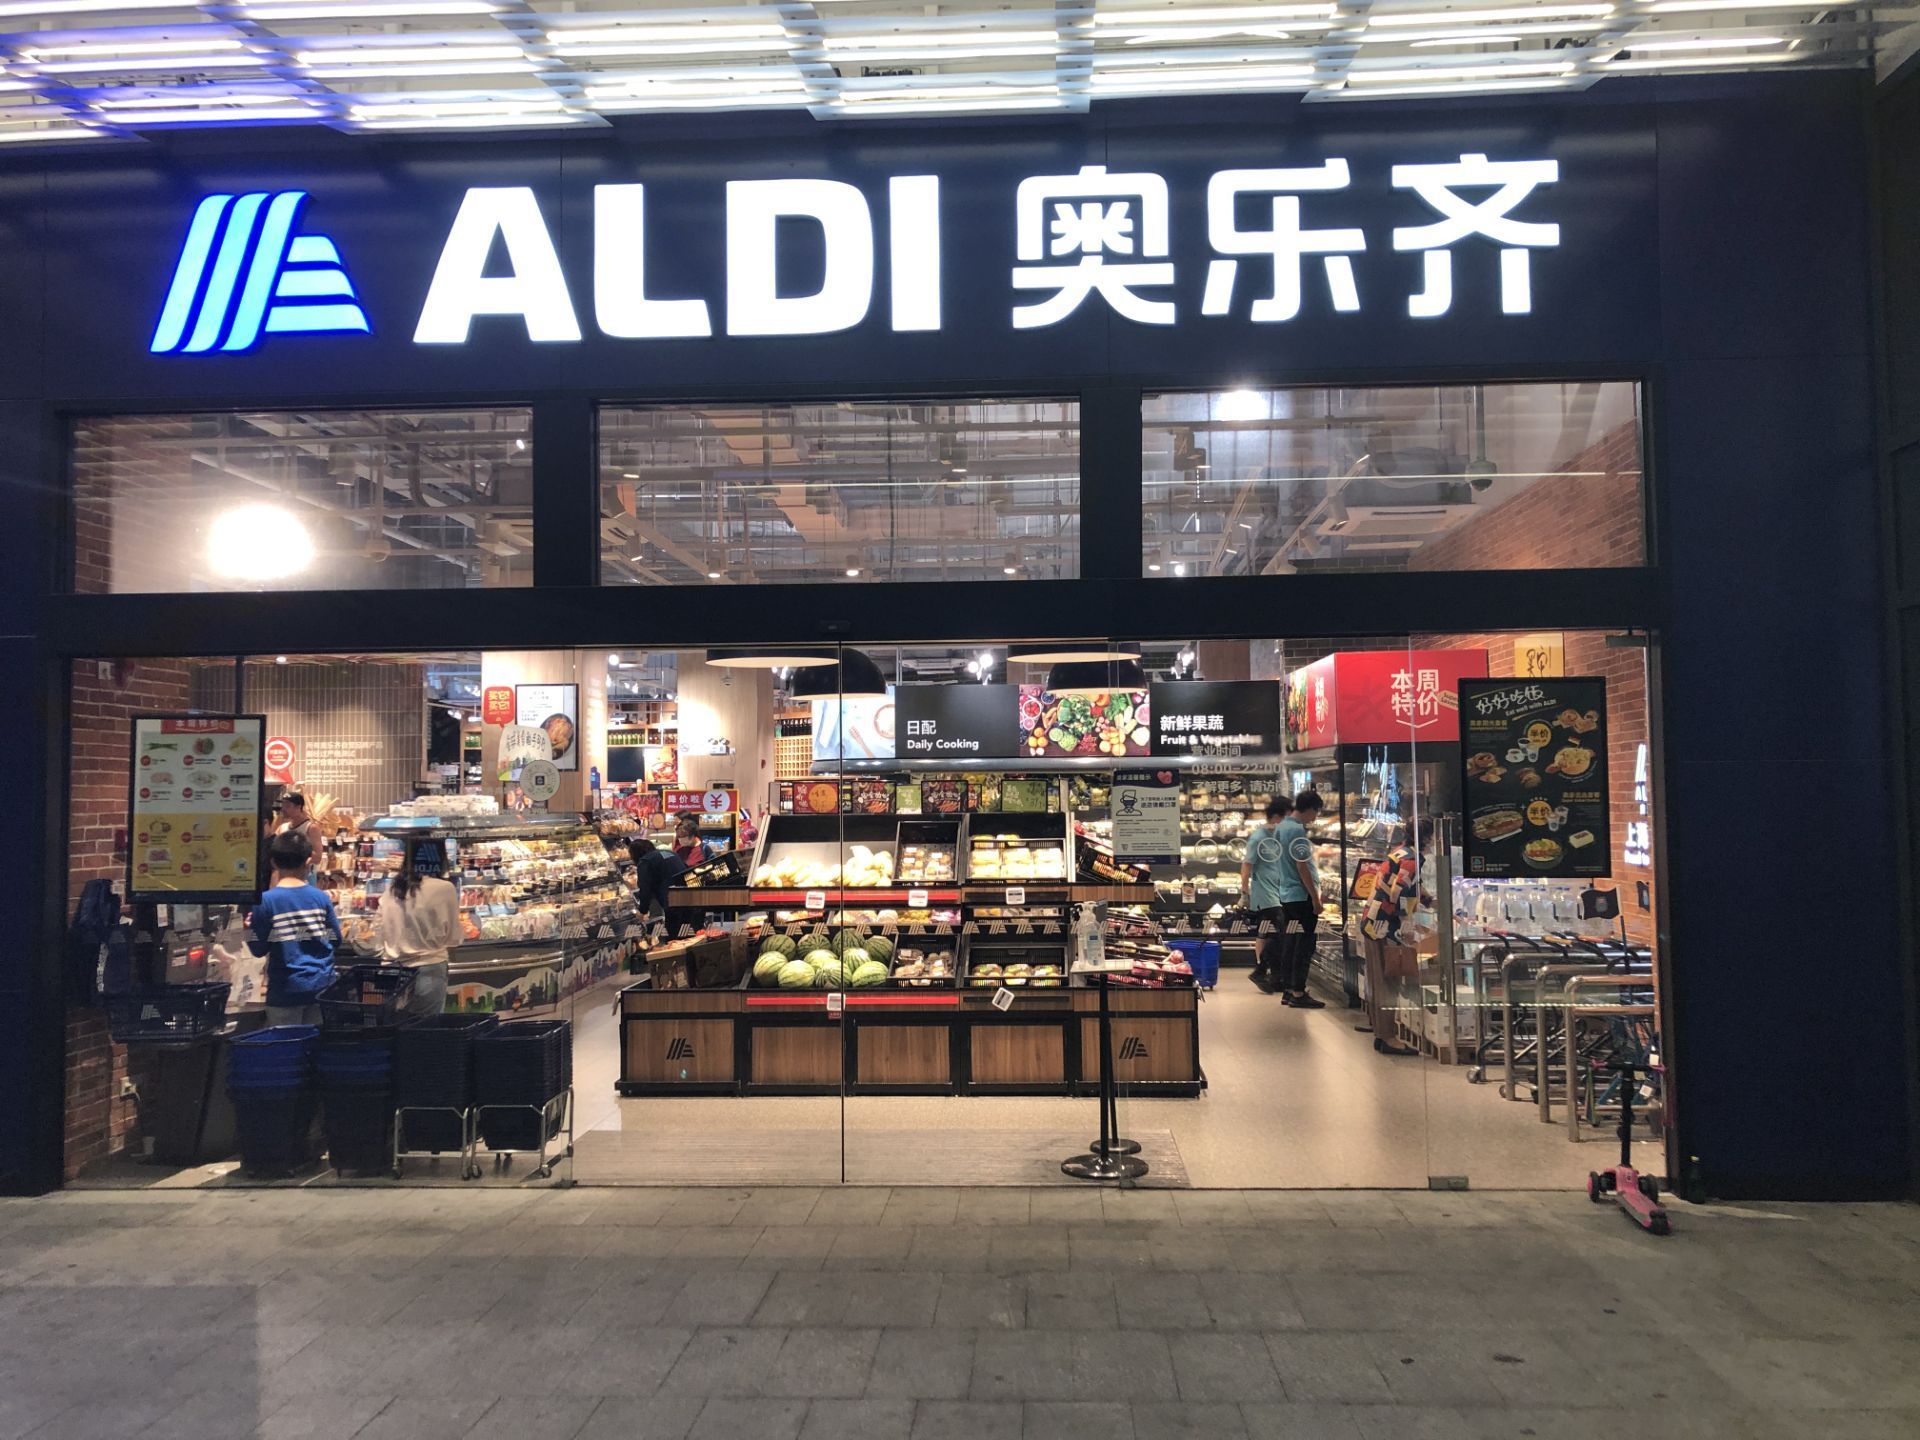 上海阿尔迪超市图片